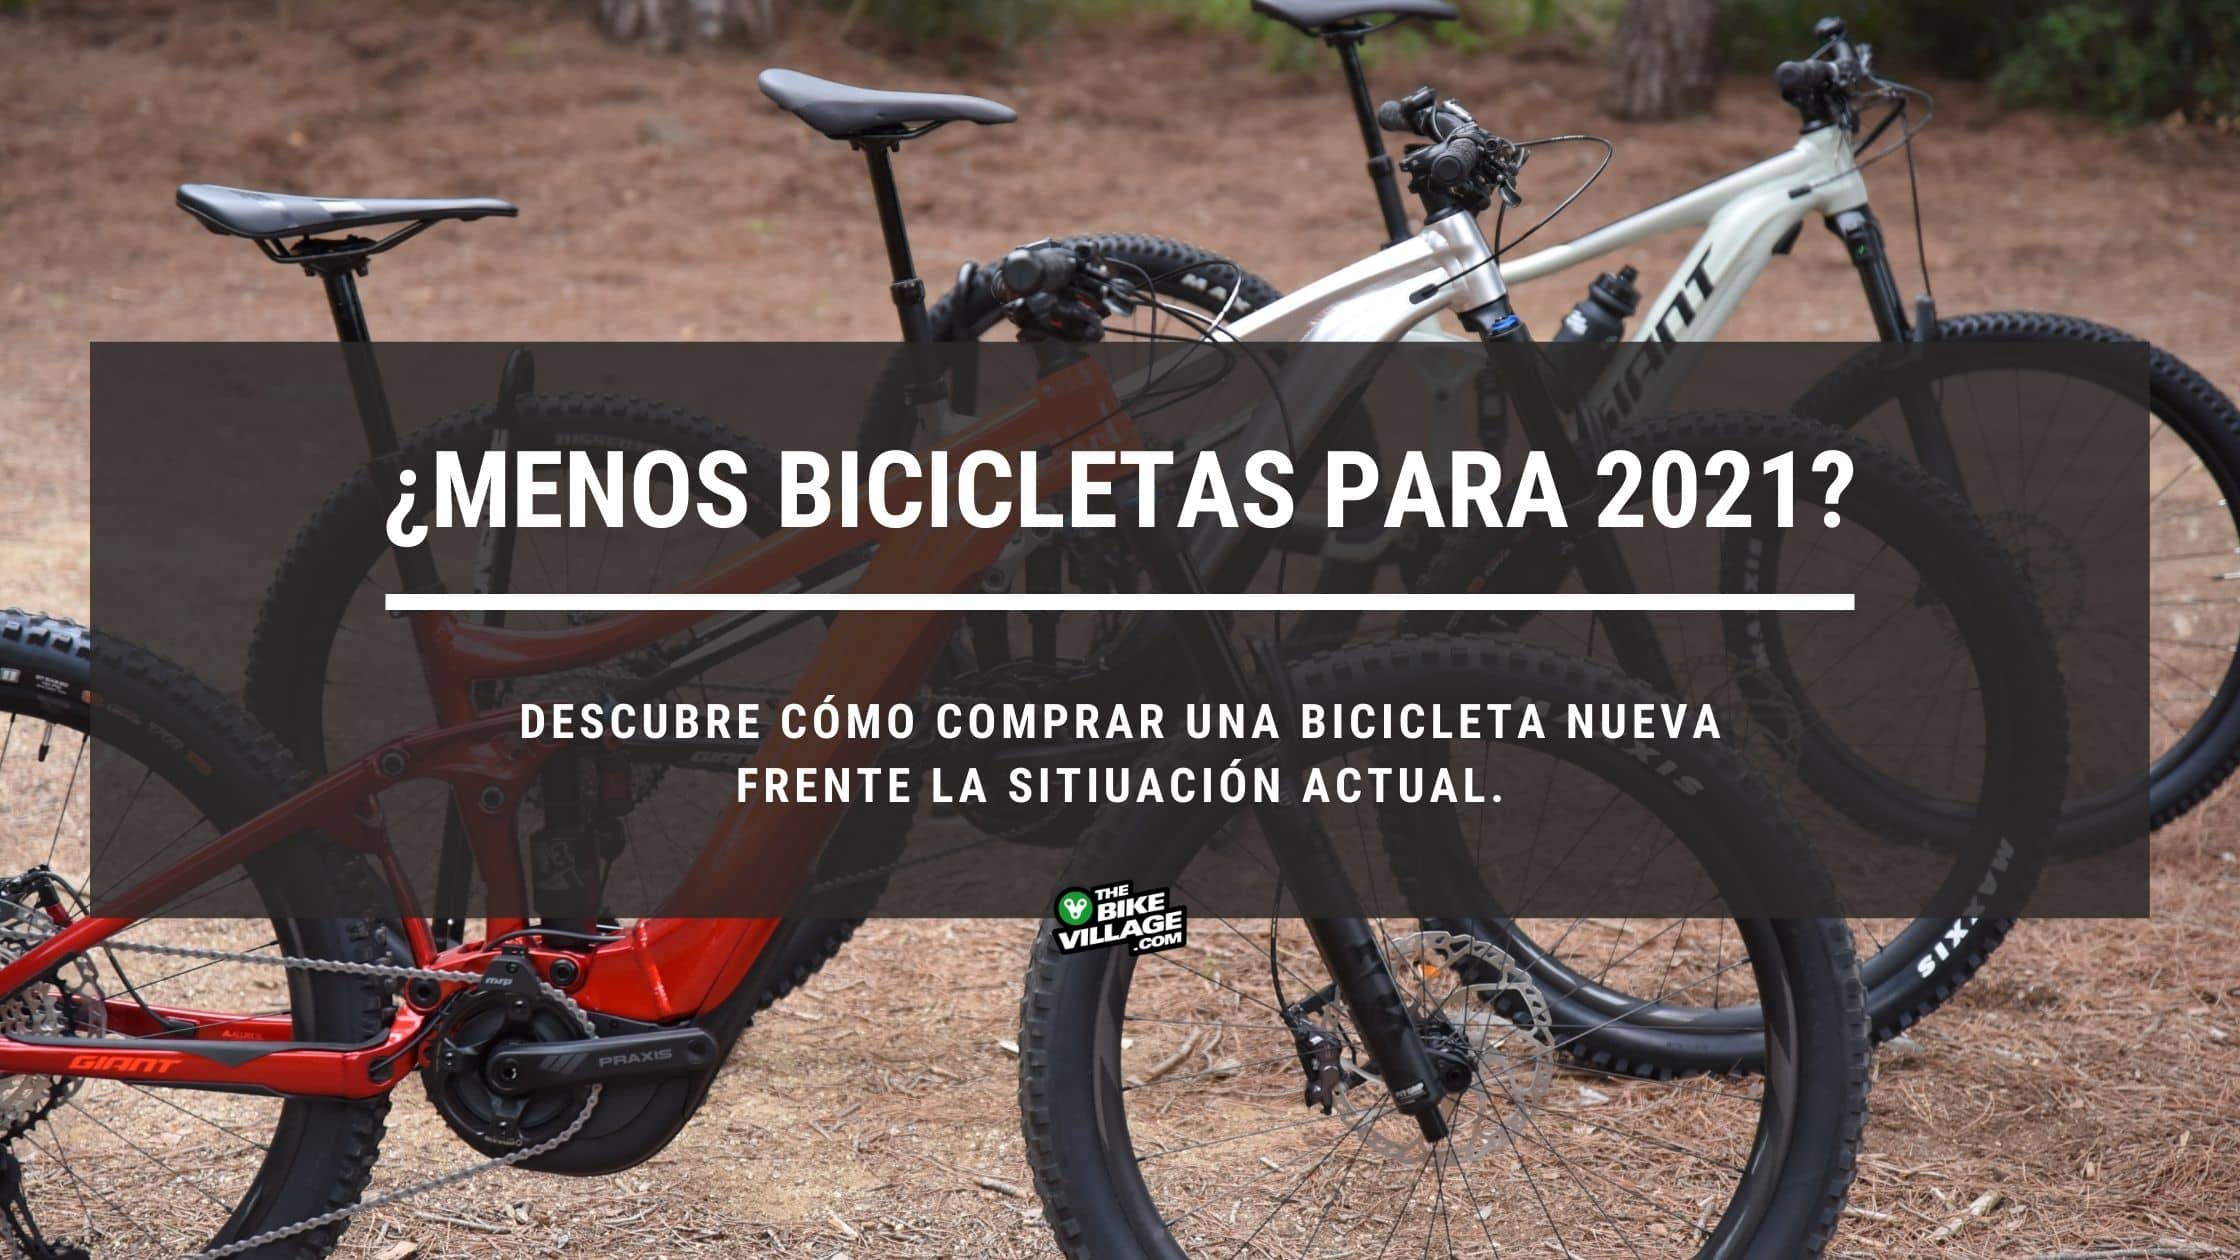 Menos bicicletas y esperas más largas para 2021